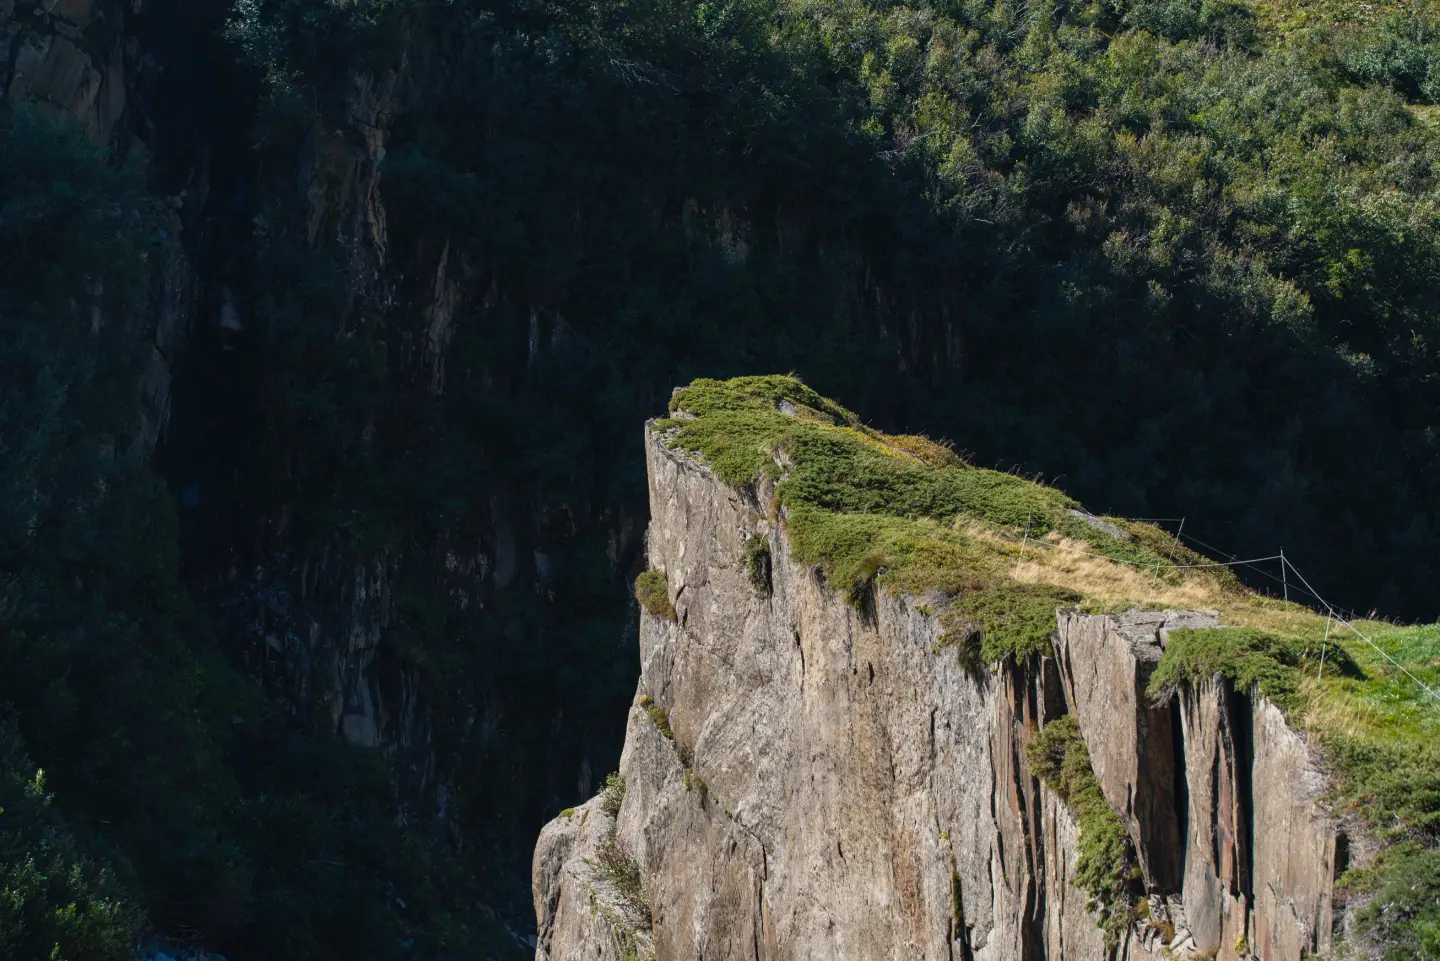 cliff-edge